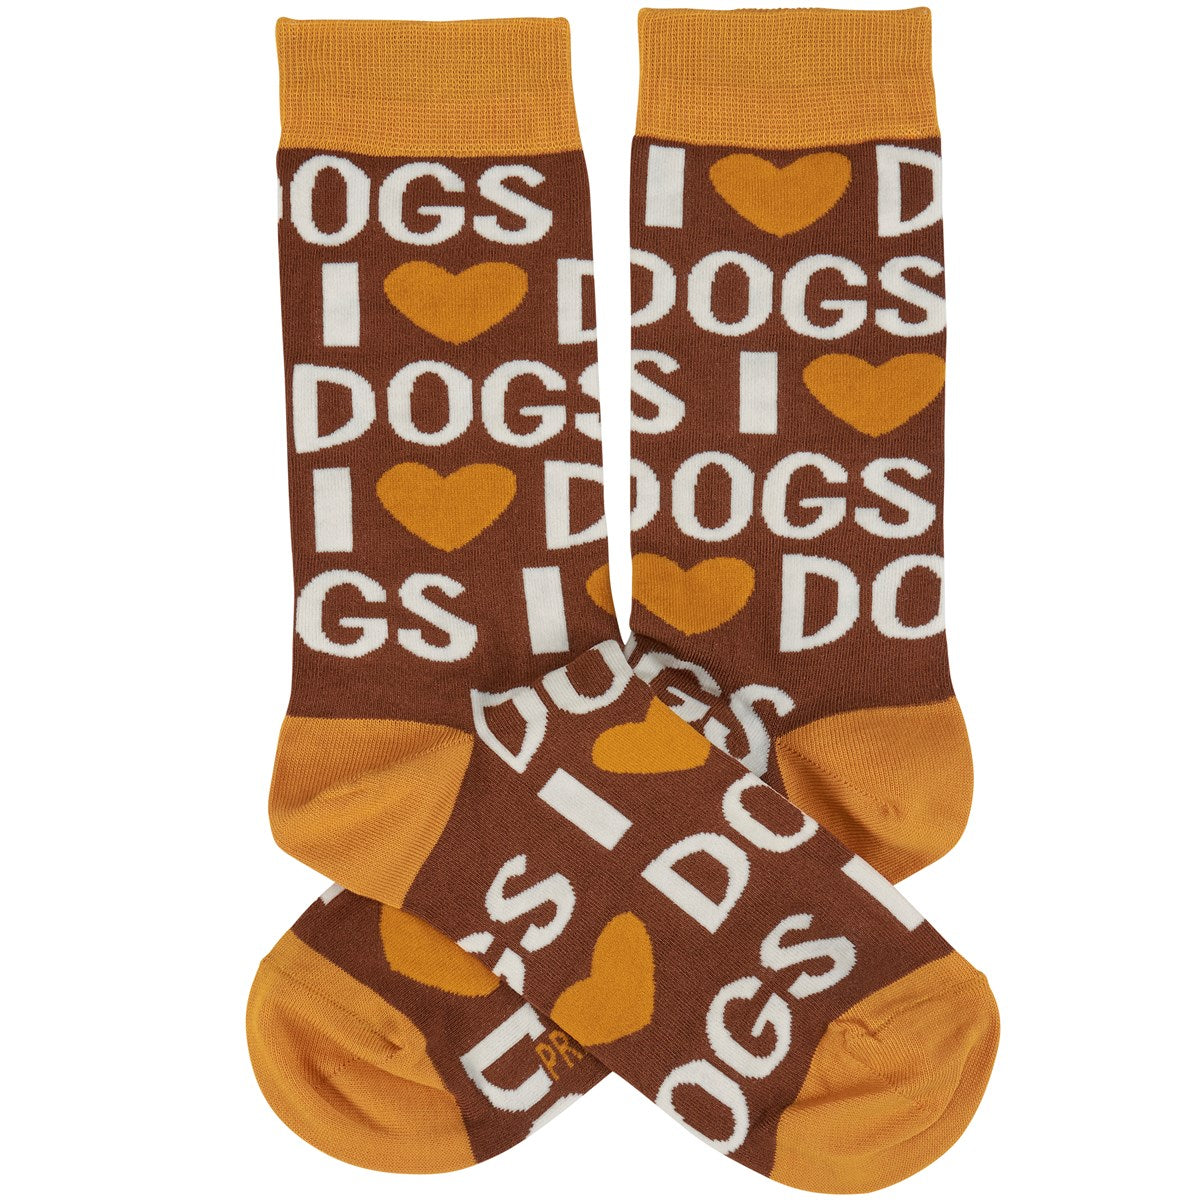 I Love Dogs Socks